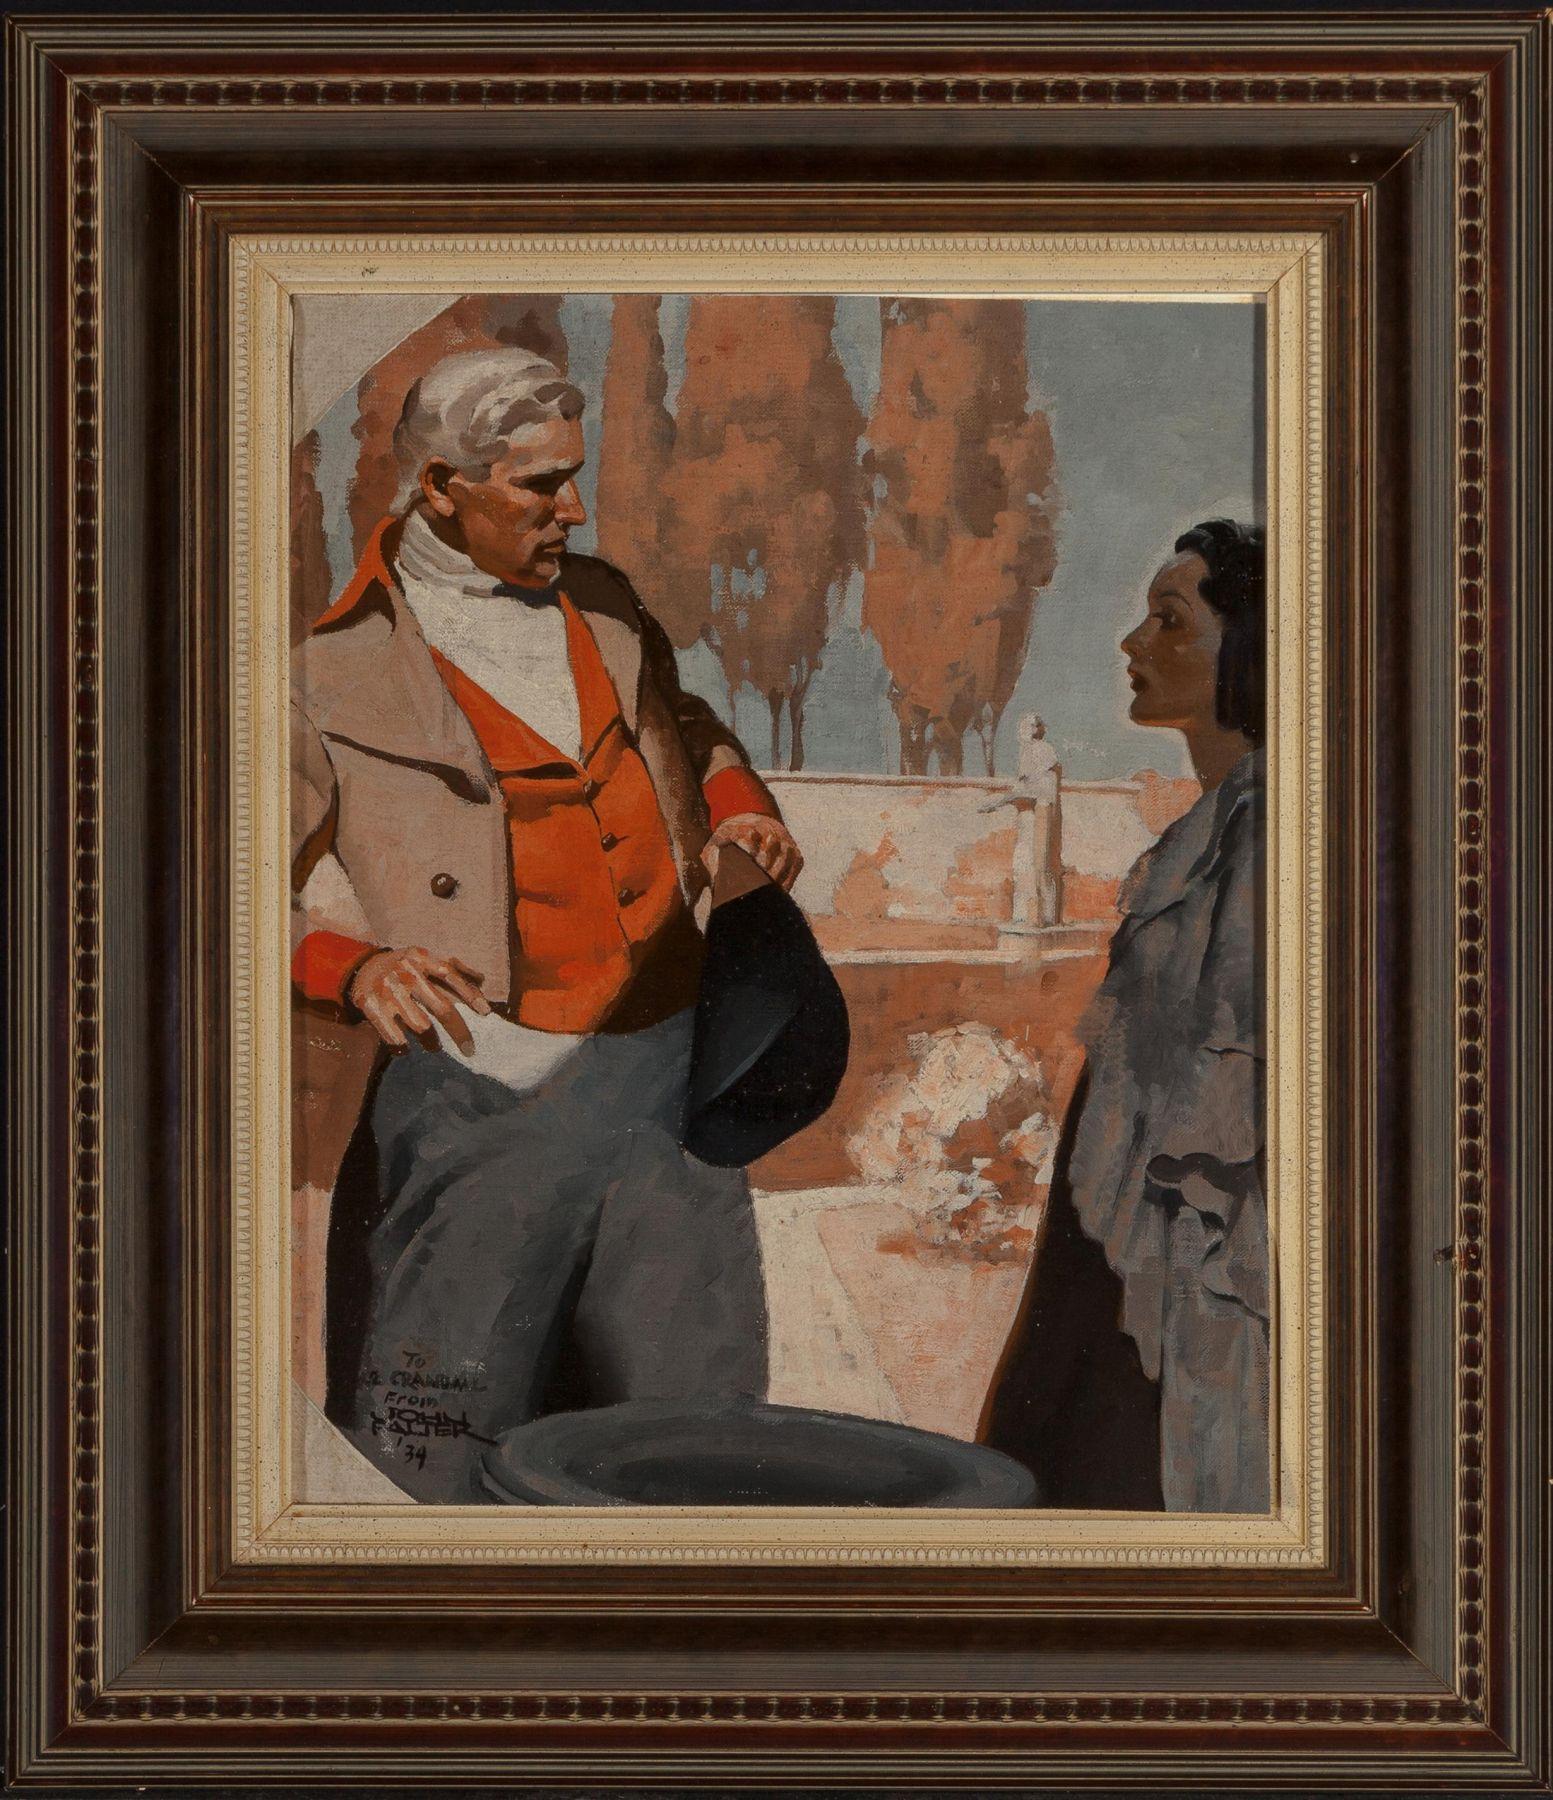 Die Konfrontation, 1934 – Painting von John Philip Falter